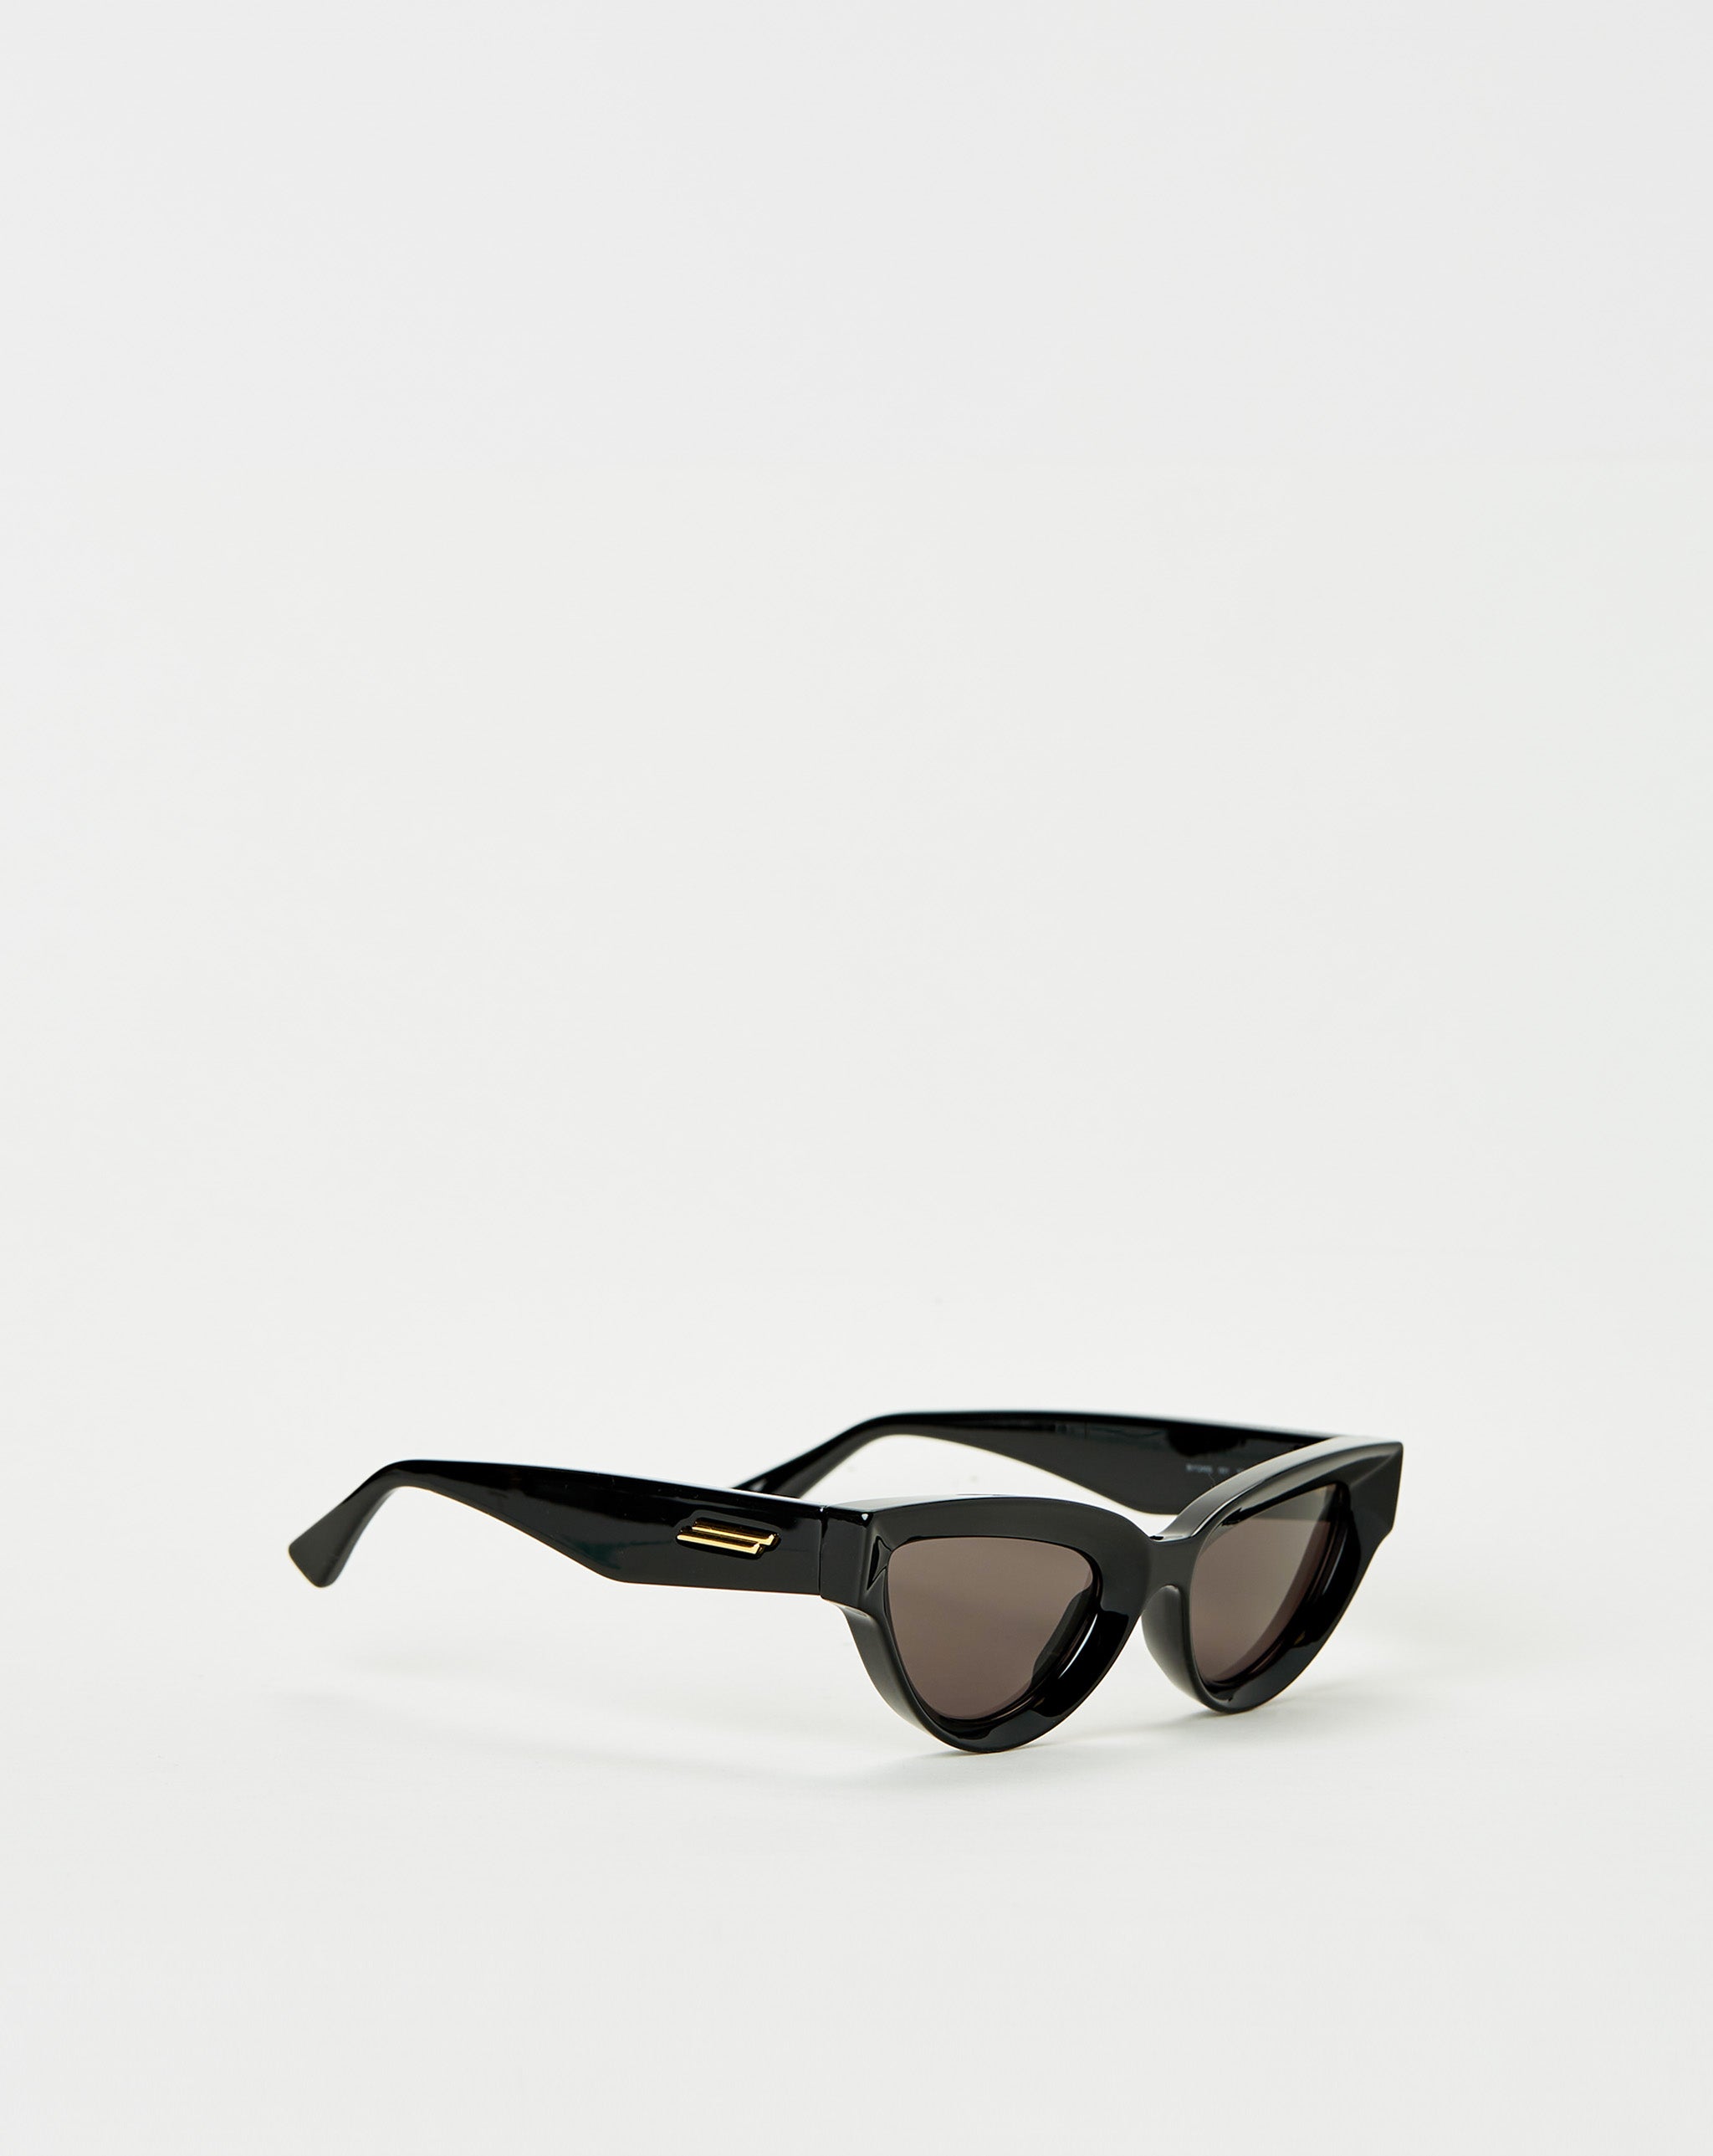 Bottega Veneta sunglasses vans bomb shades vn0a45goblk1 black  - Cheap Urlfreeze Jordan outlet